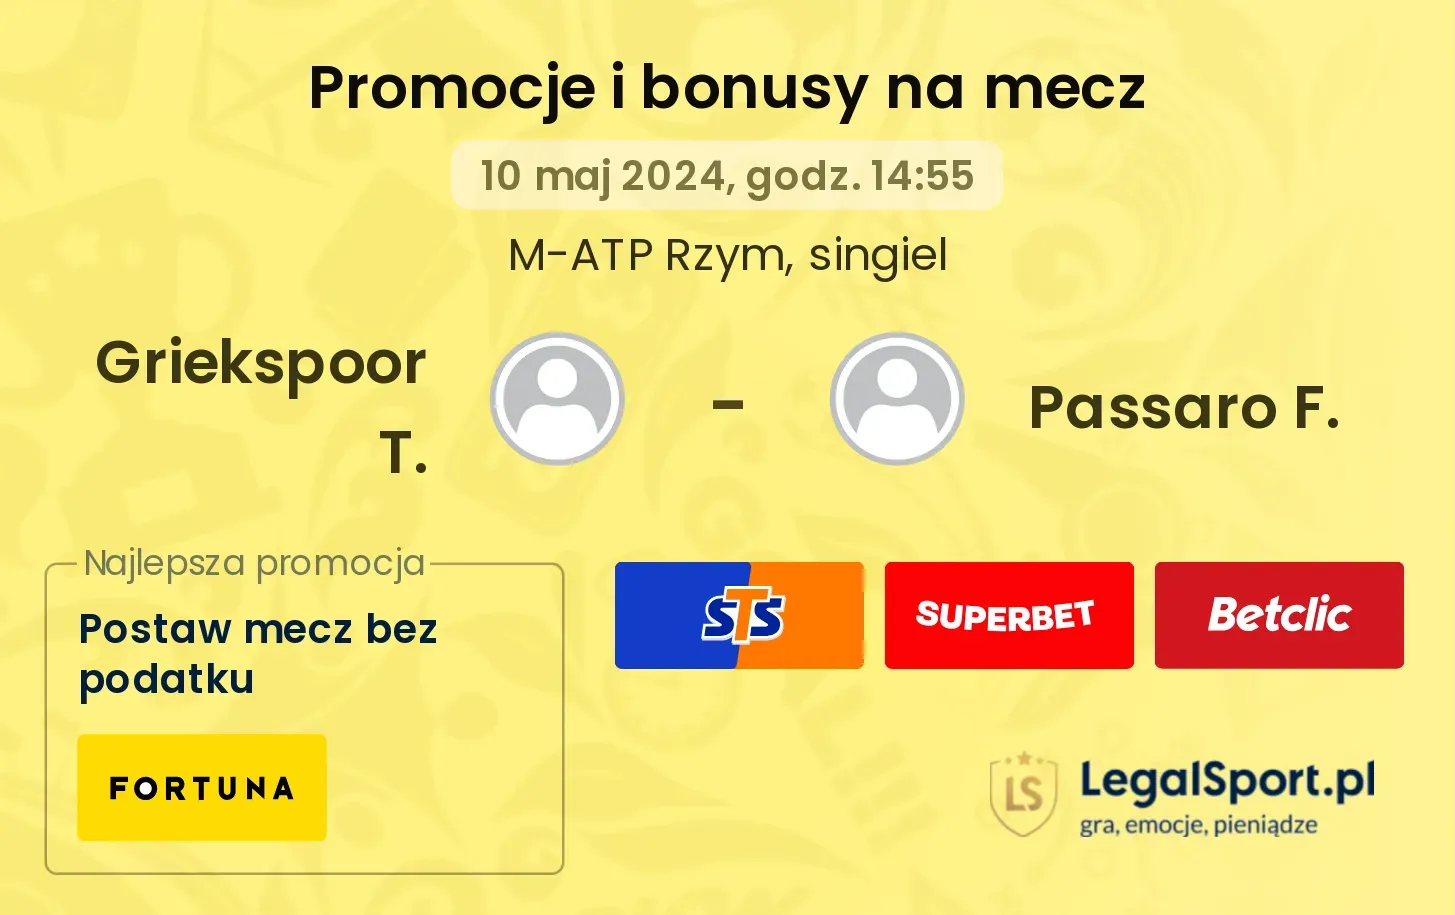 Griekspoor T. - Passaro F. promocje bonusy na mecz